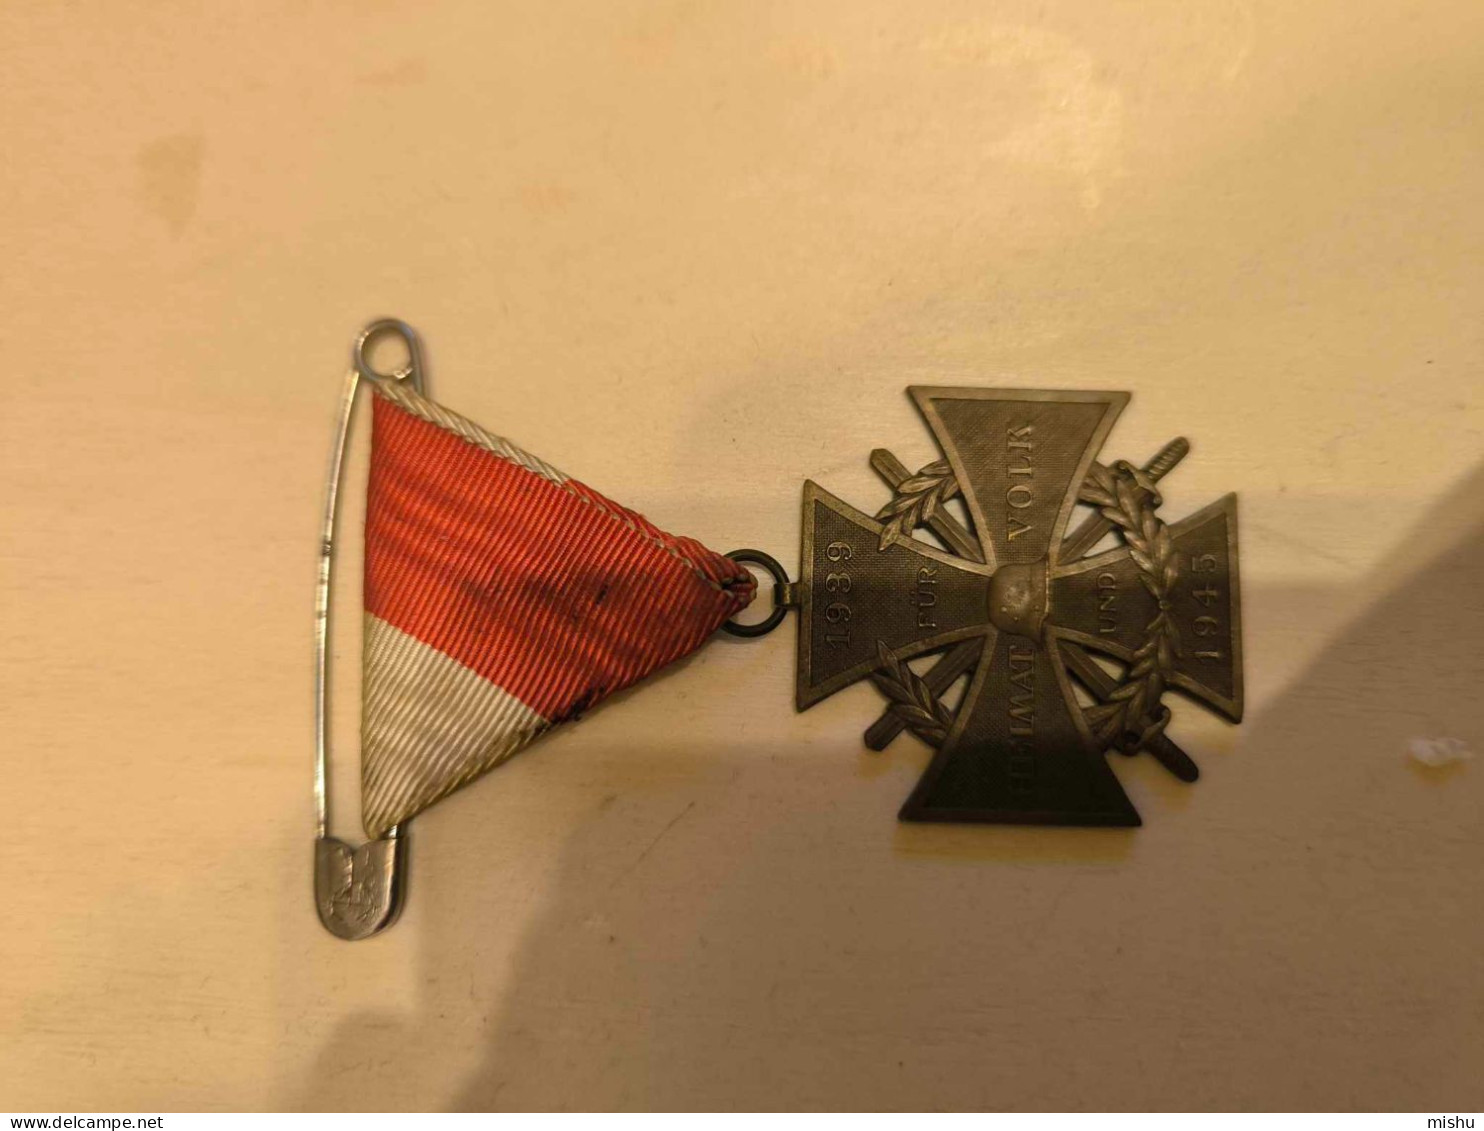 Austrian Cross FUR HEIMAT UND VOLK 1939 - 1945 - Oesterreich